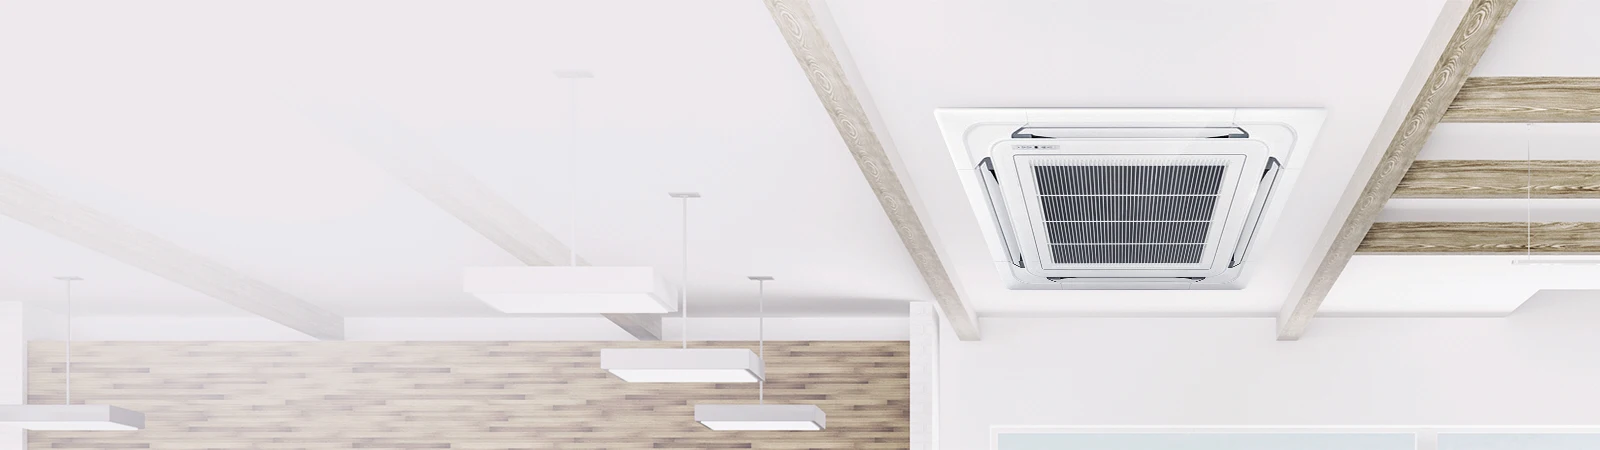 lg ceiling duct-type air conditioner manual espa%C3%B1ol